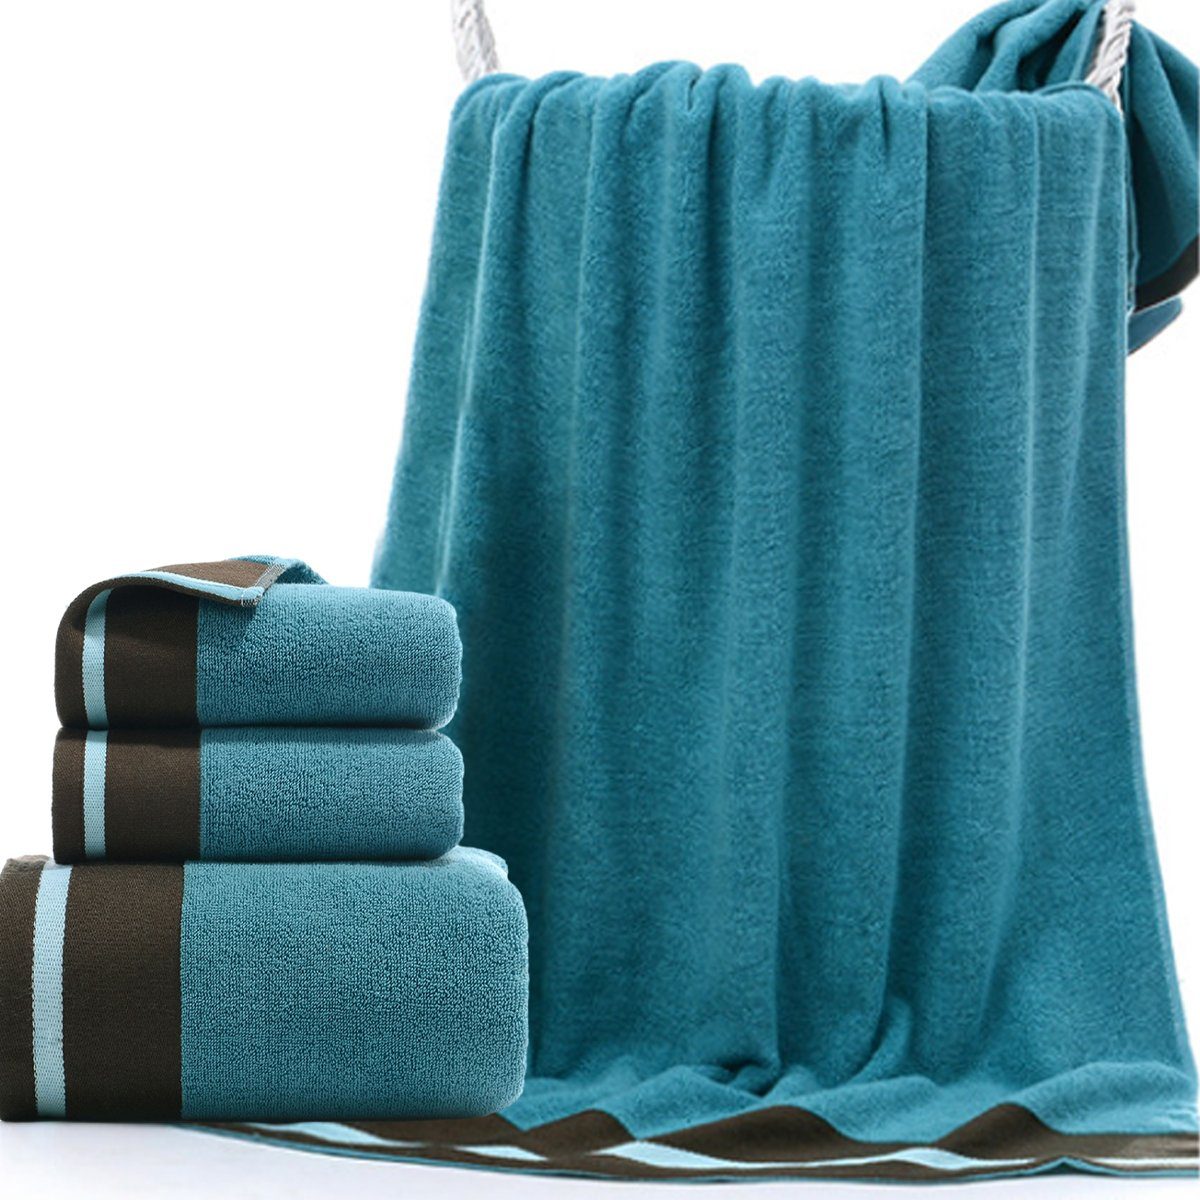 Jormftte Handtuch und Blau Hause weich,für zu Set-2xHandtuch,1xBadetuch,saugfähig Handtücher Set